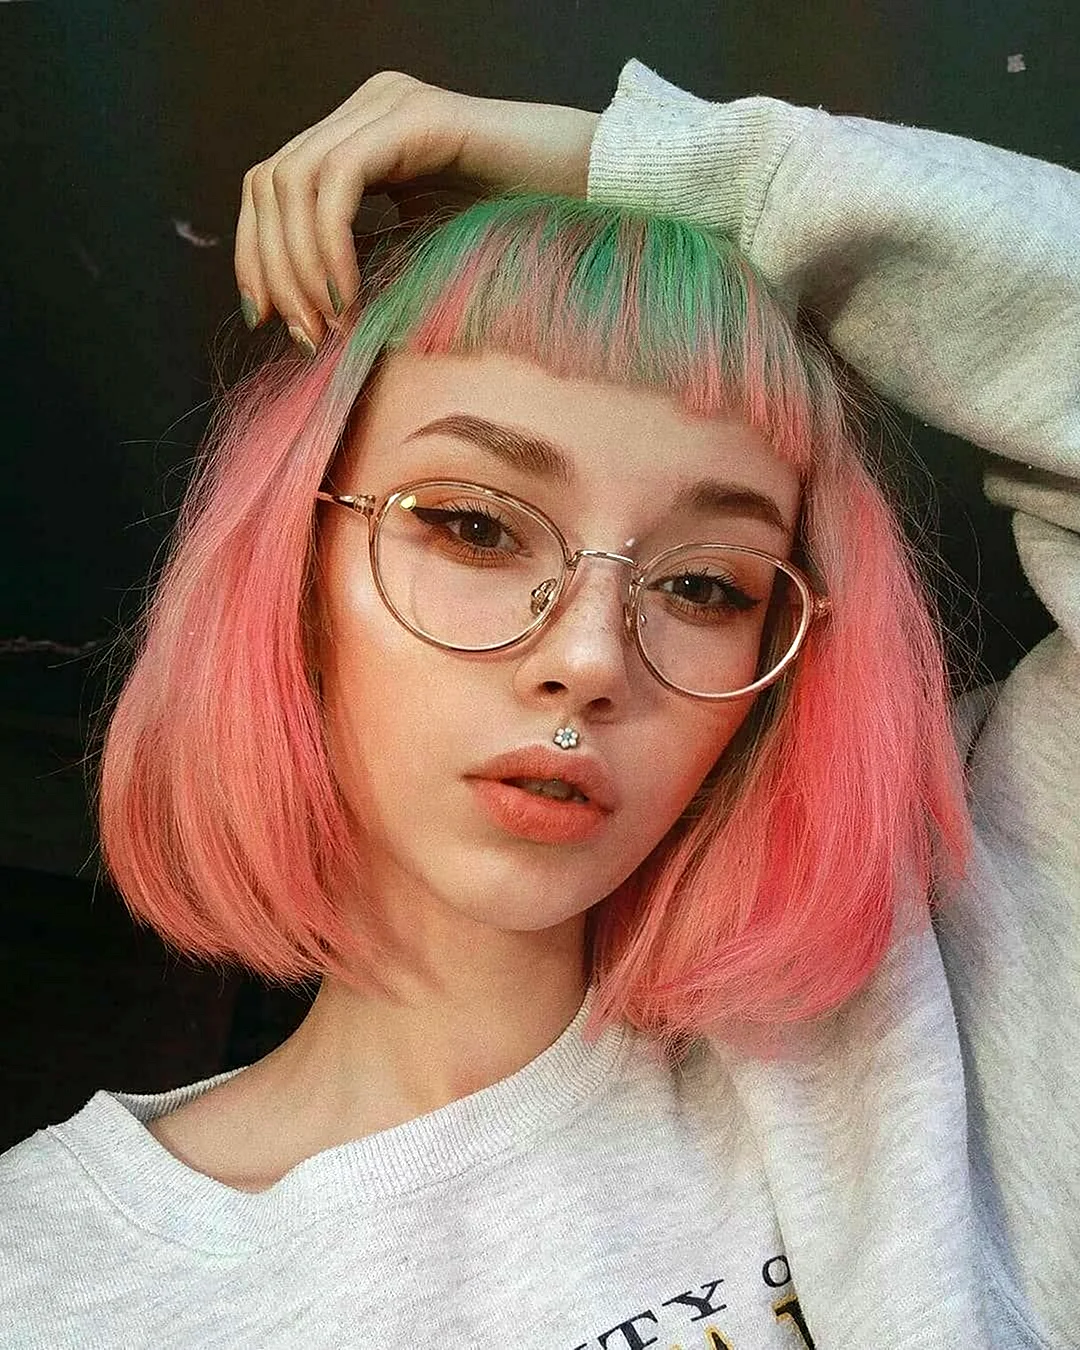 Короткие розовые волосы